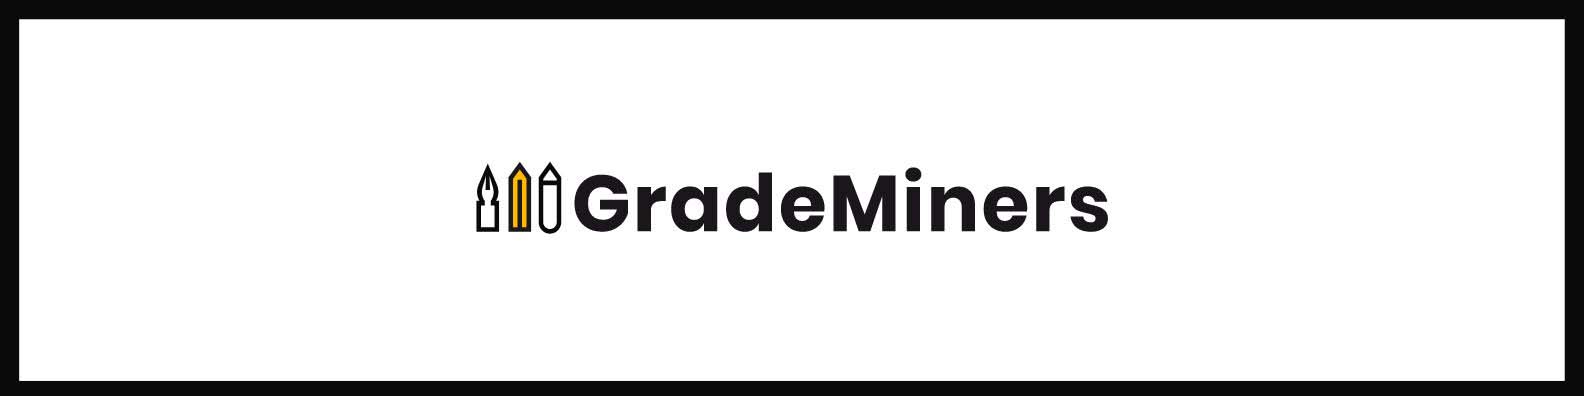 GradeMiners